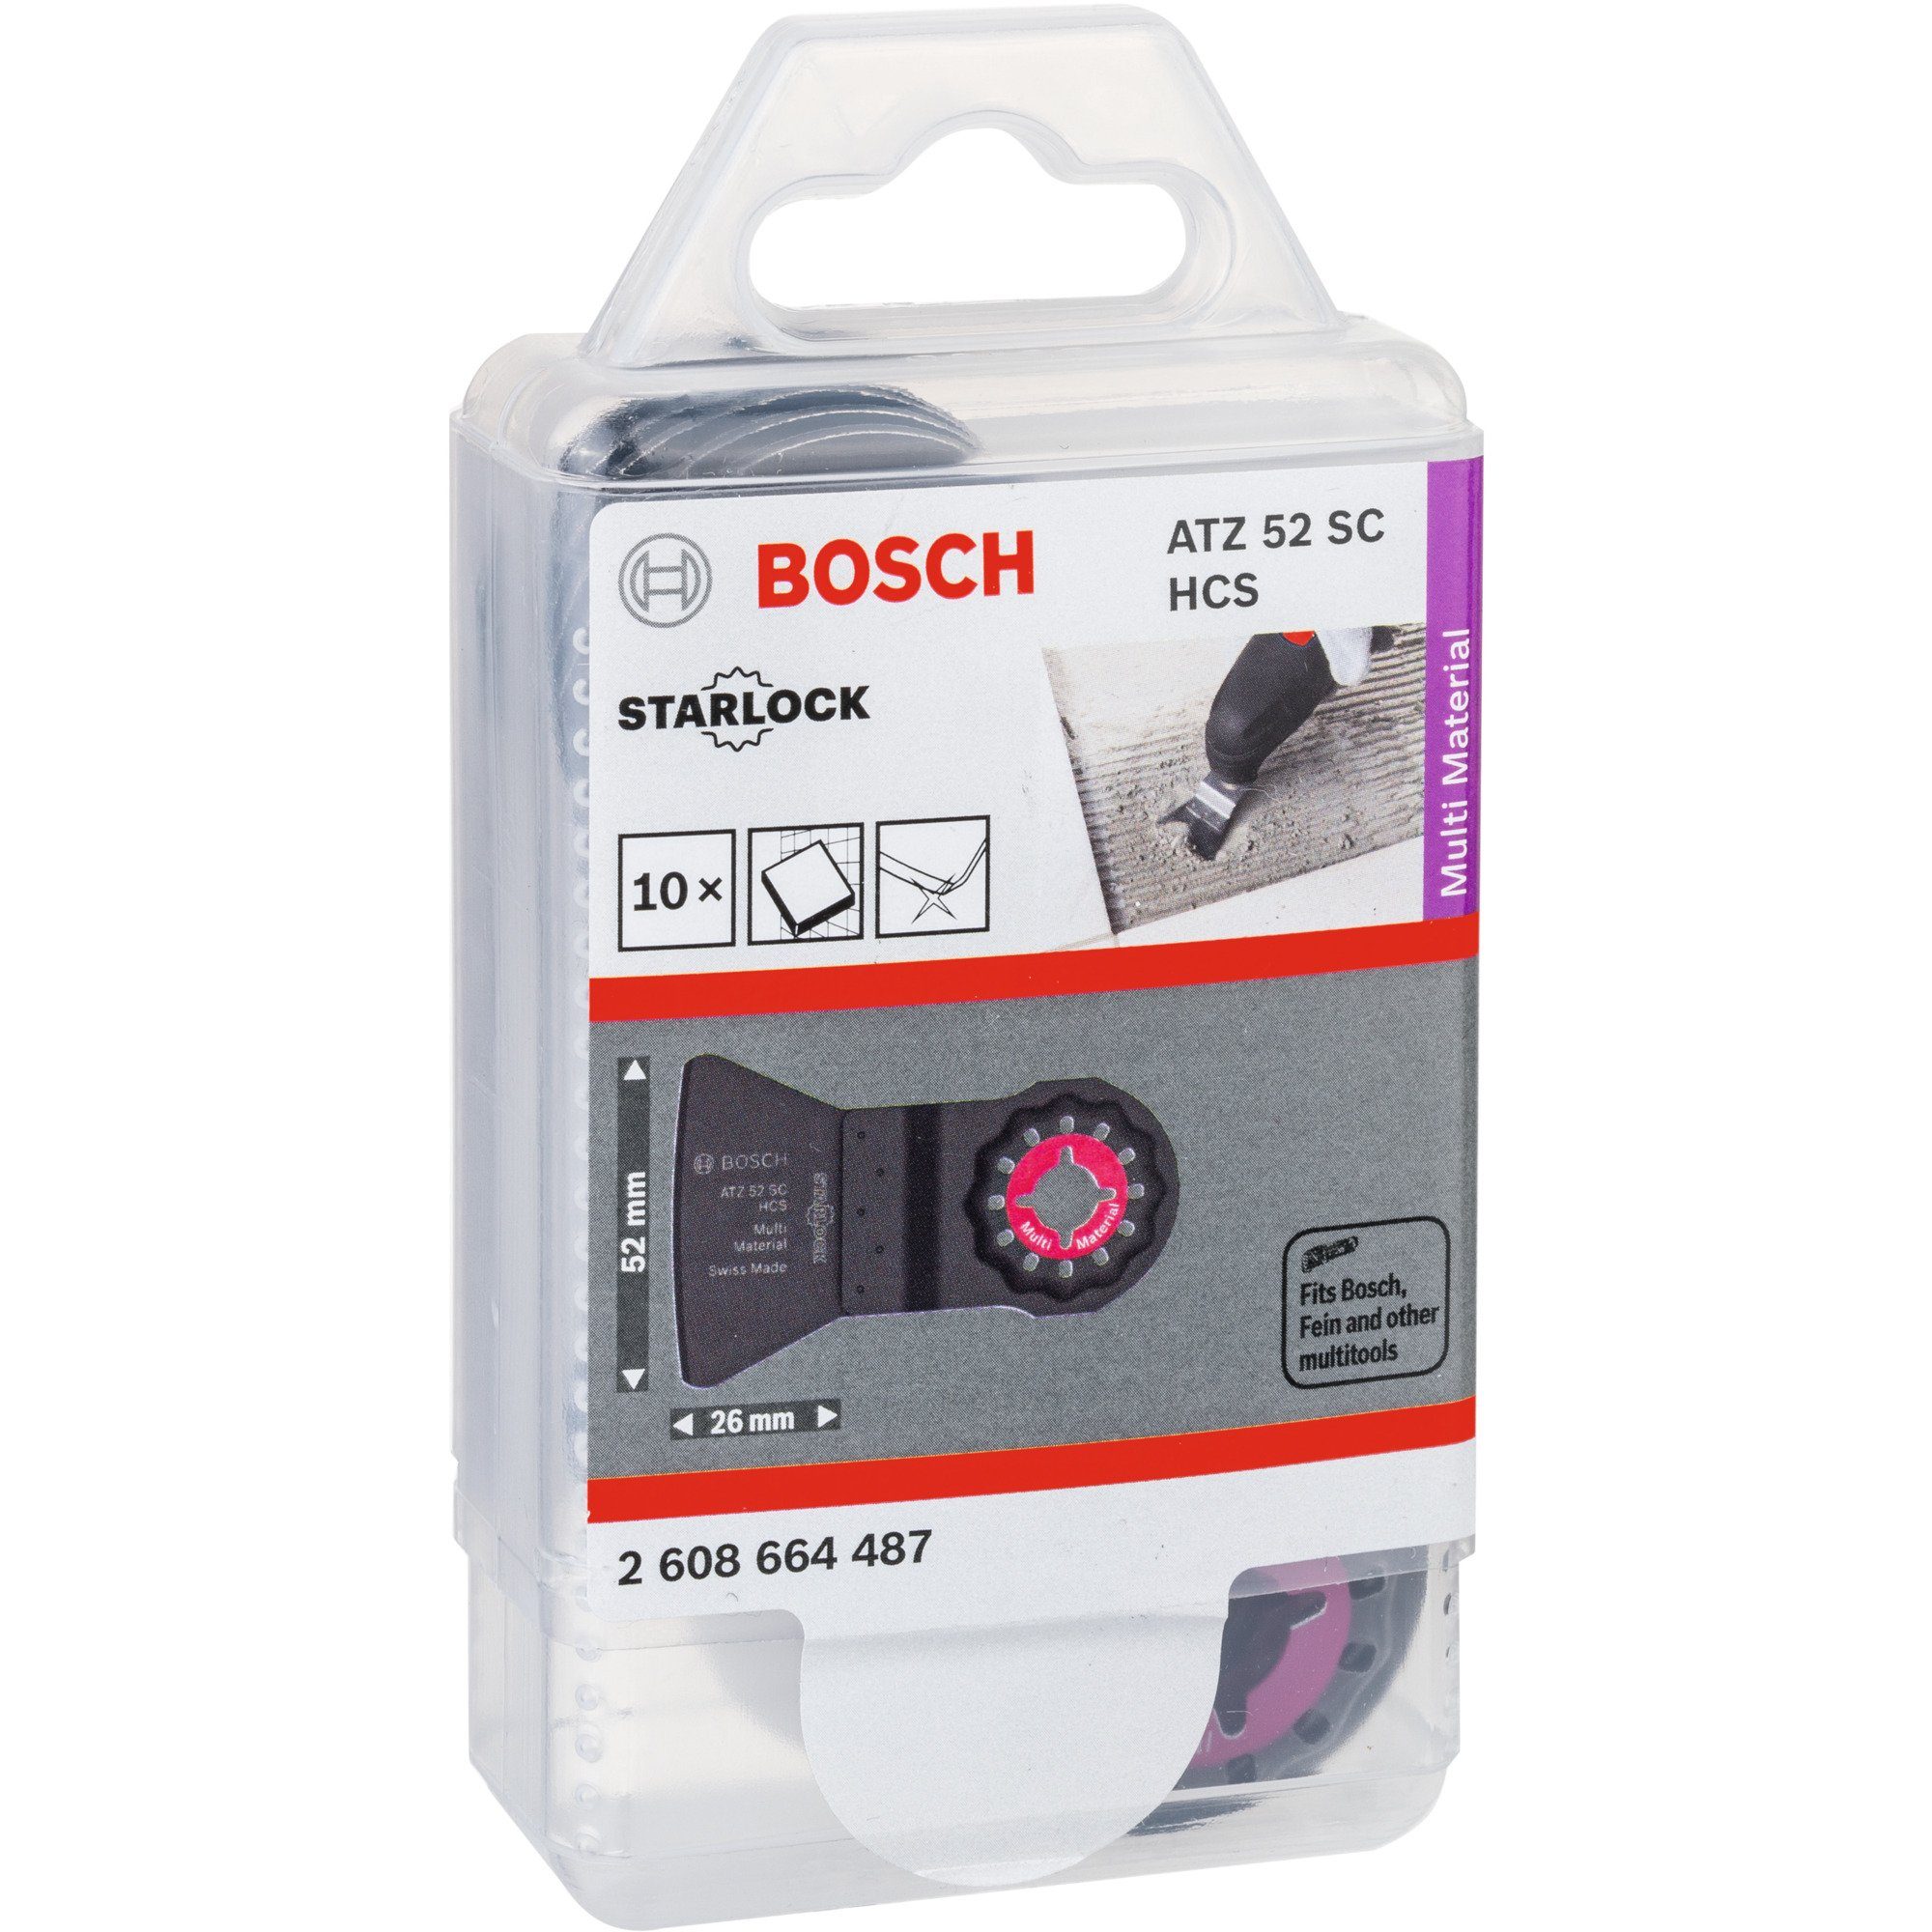 BOSCH Sägeblatt Bosch Professional Schaber ATZ 52 SC Multi, Material: HCS  (Kohlenstoffstahl) | Tauchsägeblätter